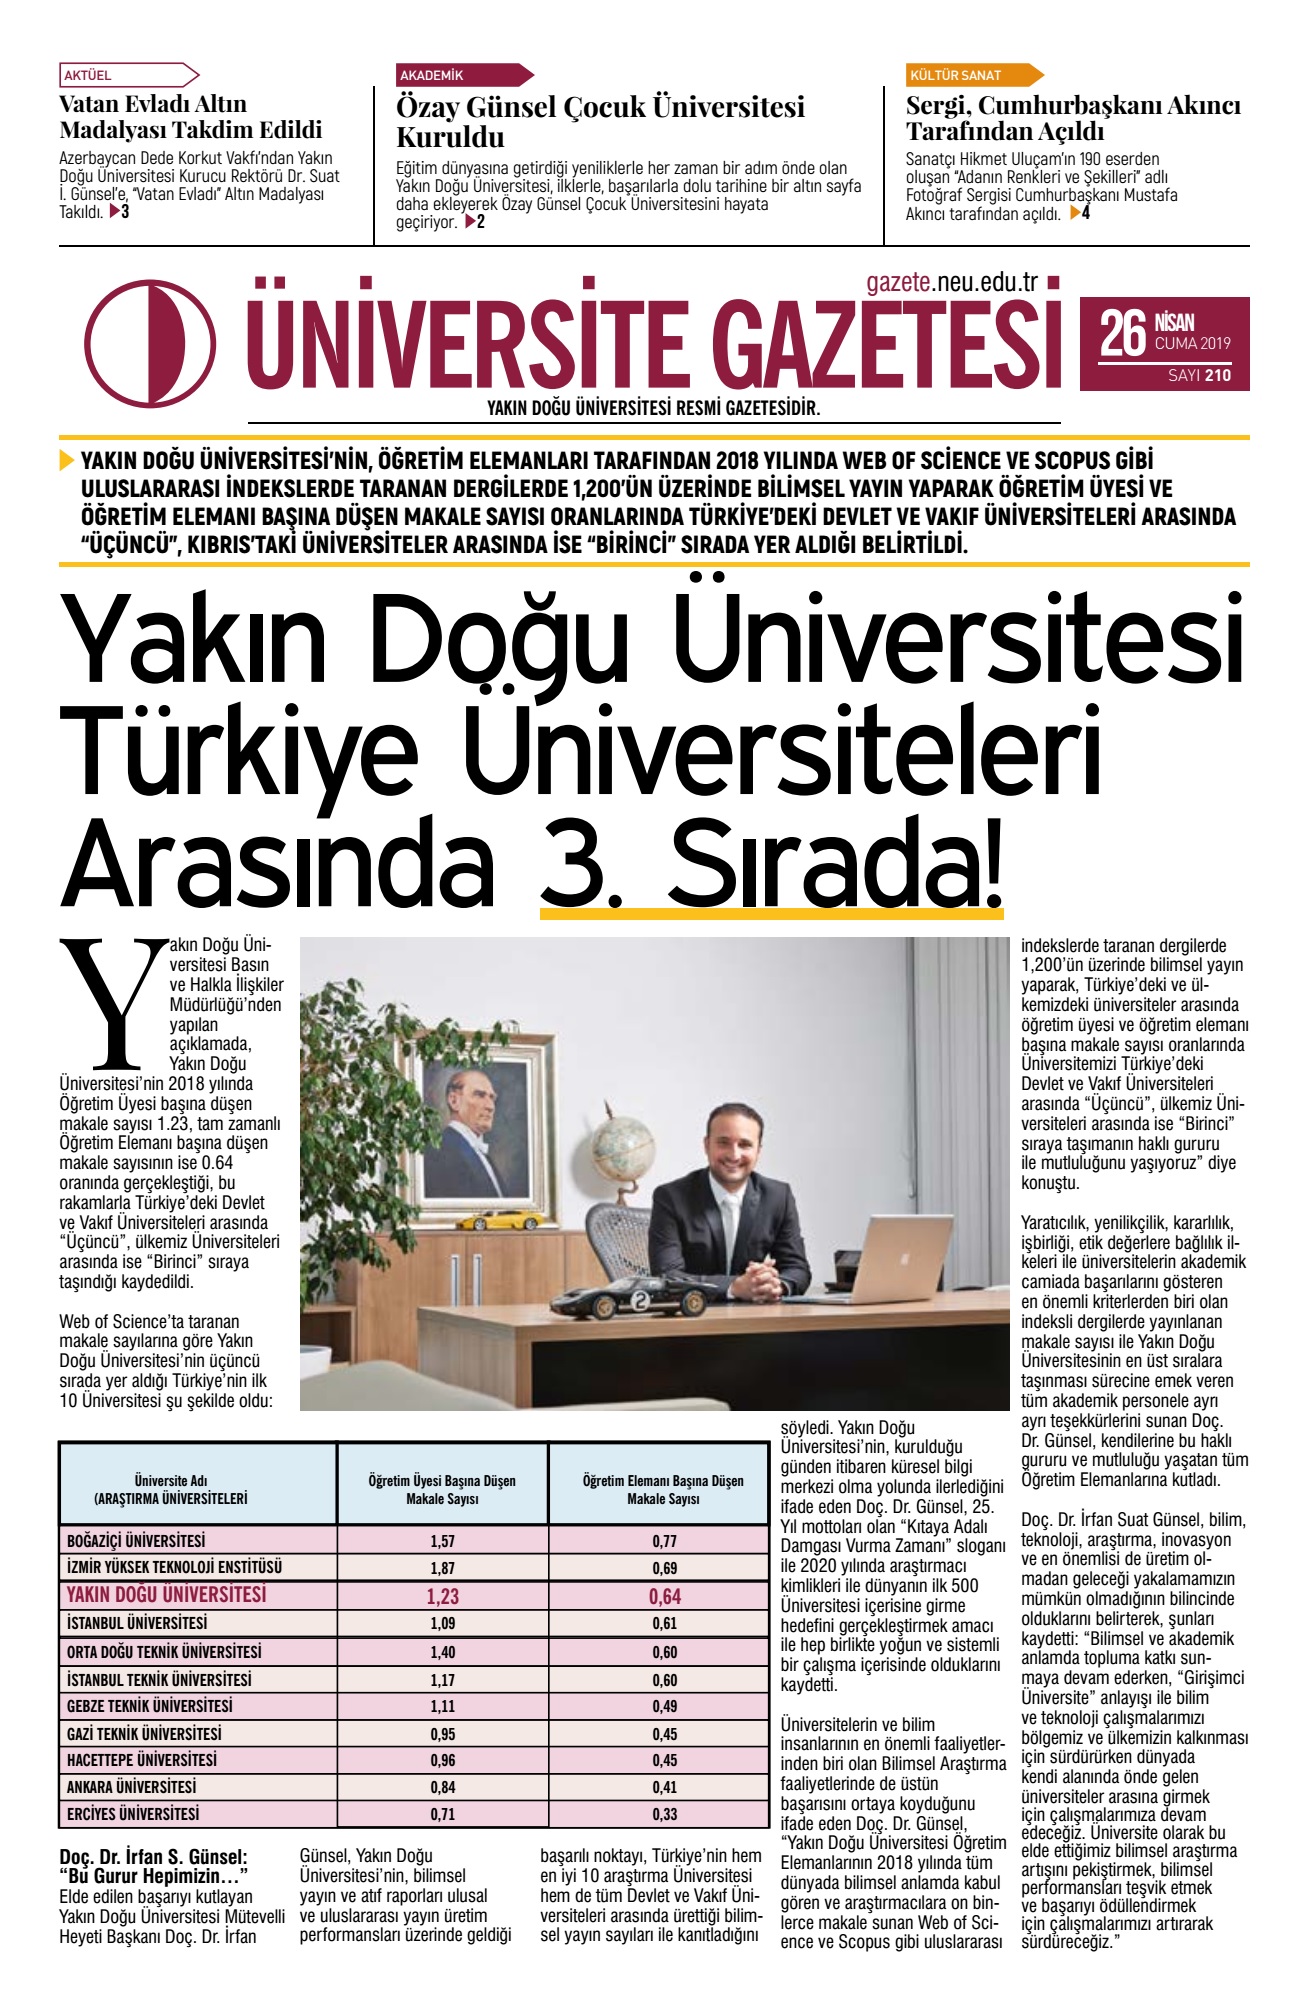 Yakın Doğu Üniversitesi – Üniversite Gazetesi 210. Sayısı